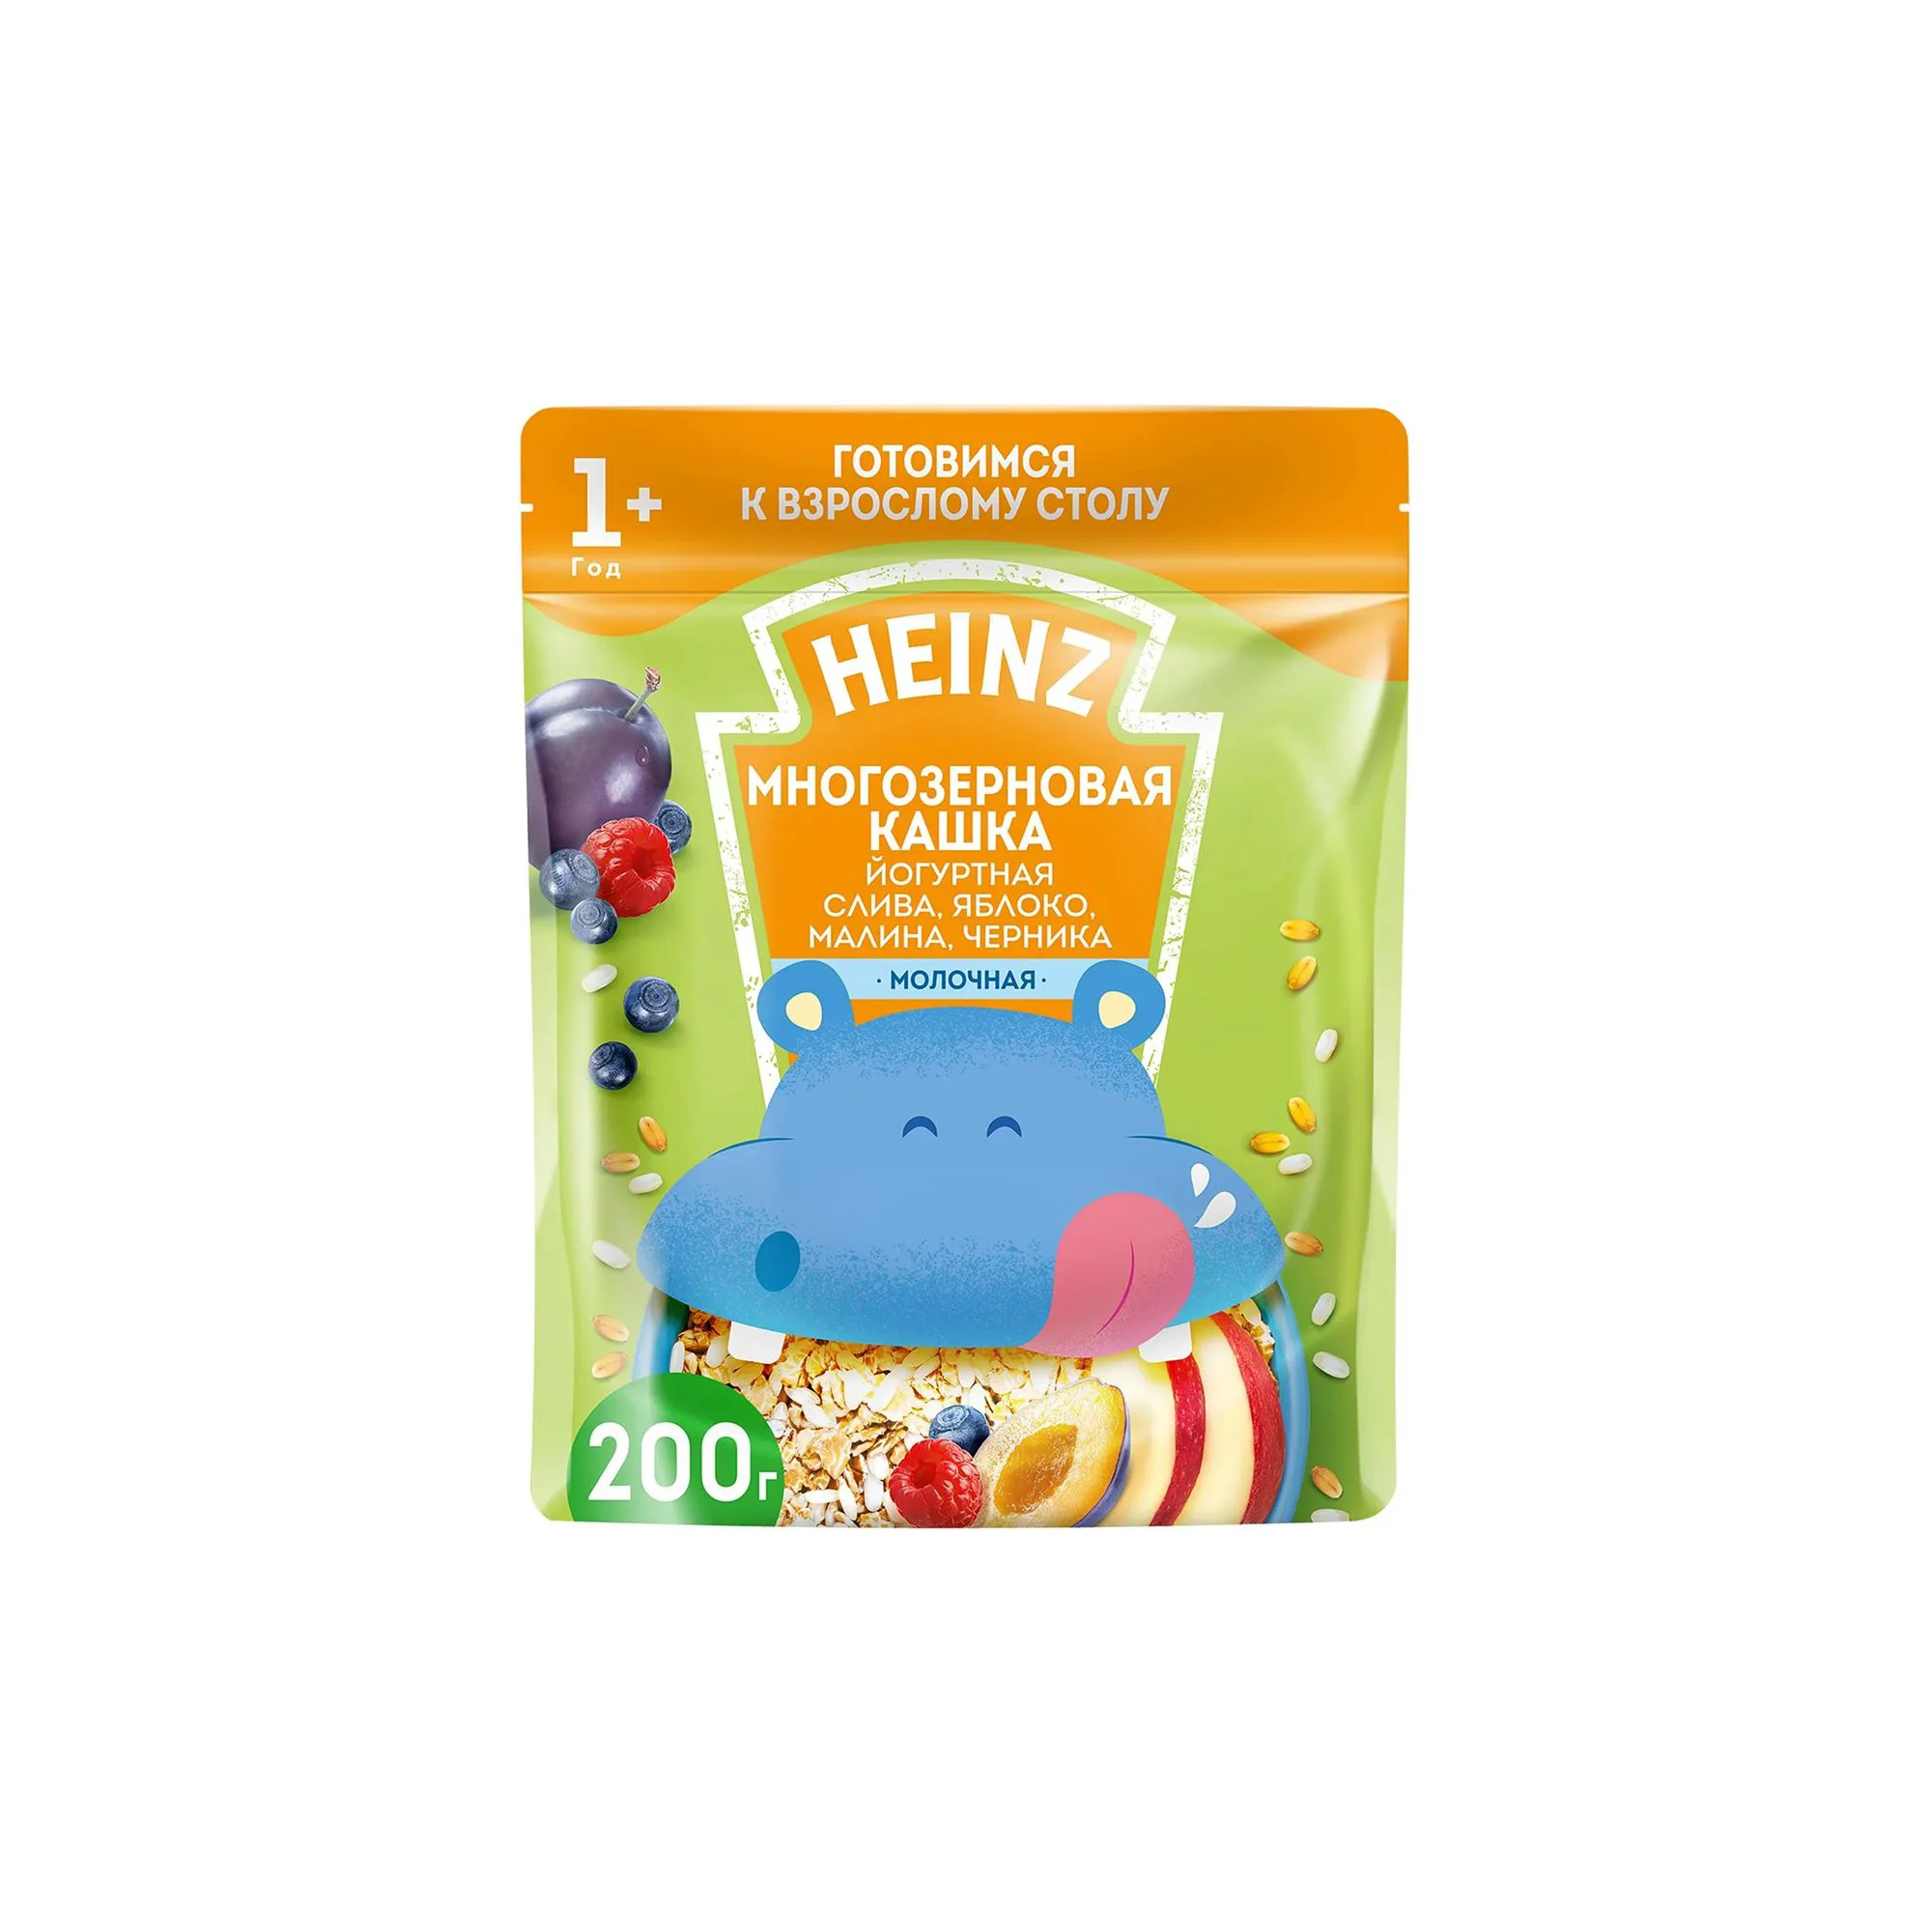 Многозерновая кашка Heinz фруктово-йогуртная малина, черника (12+ мес.), 200 г